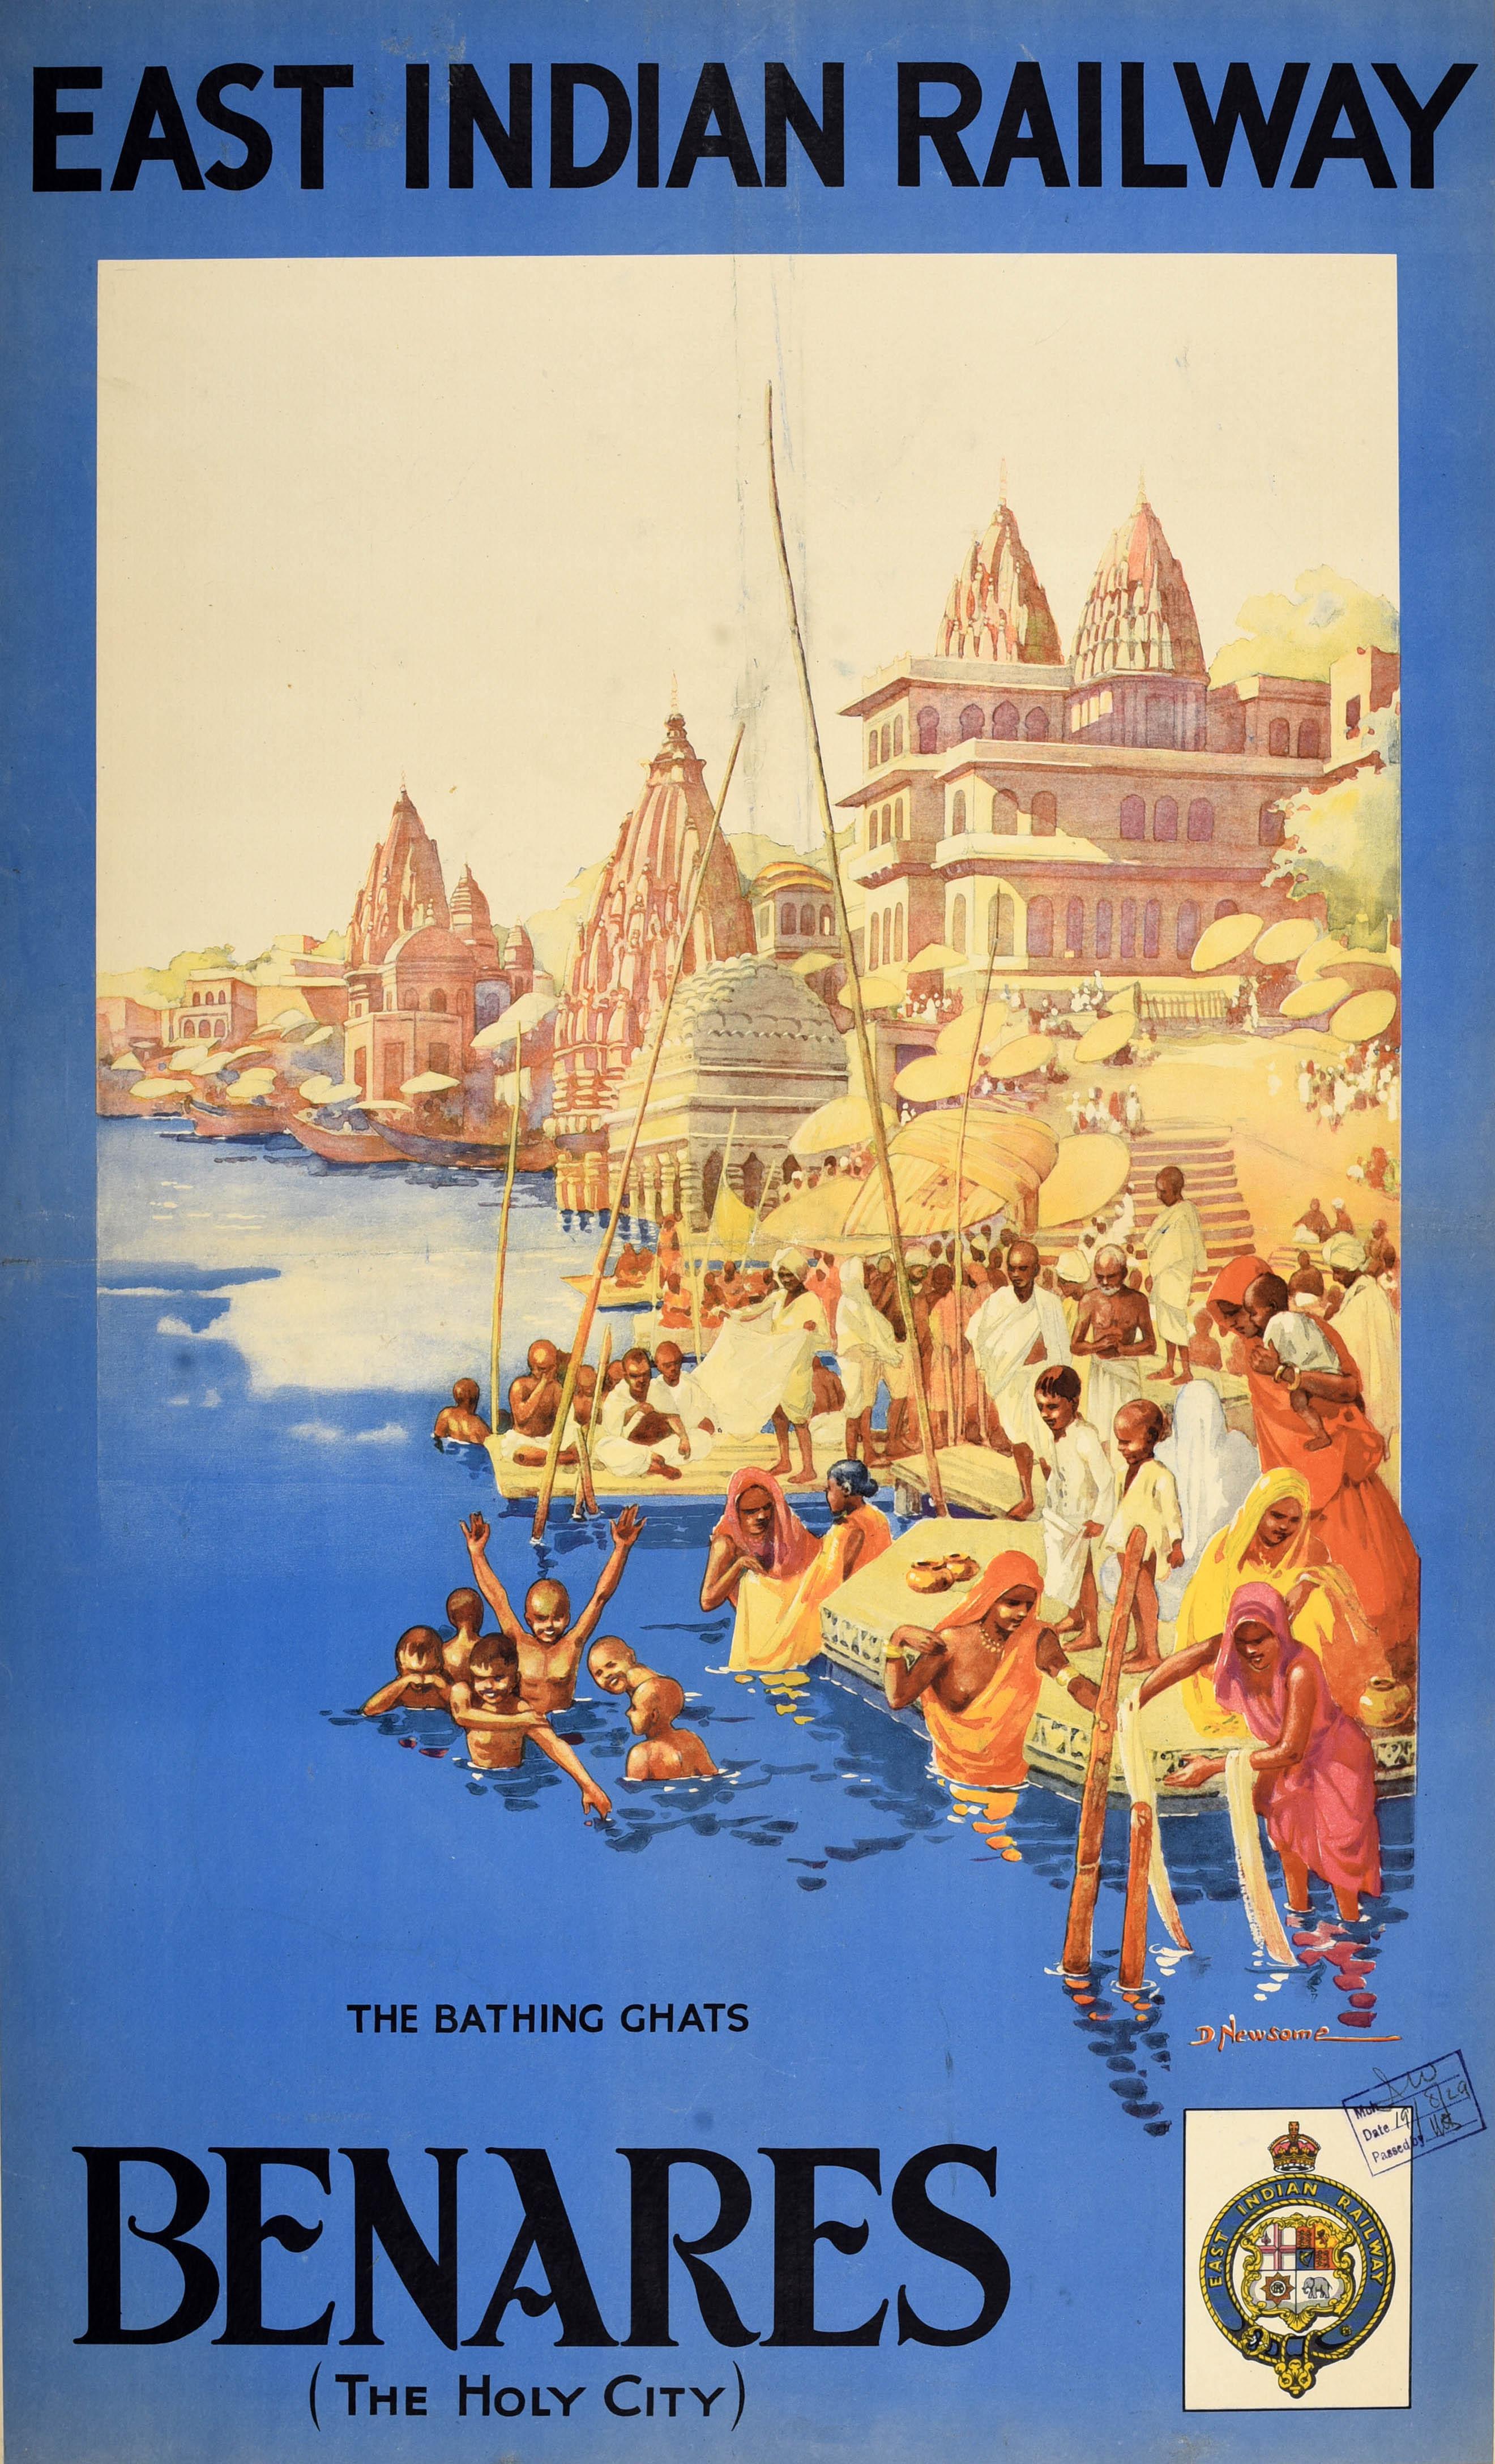 Original Vintage Asien Reiseplakat für Benares The Holy City von der East Indian Railway (1845-1952) mit Kunstwerk mit dem Titel The Bathing Ghats von der britischen Künstlerin Dorothy Newsome (1900-1980) zeigt Menschen, einige Familien und Kinder